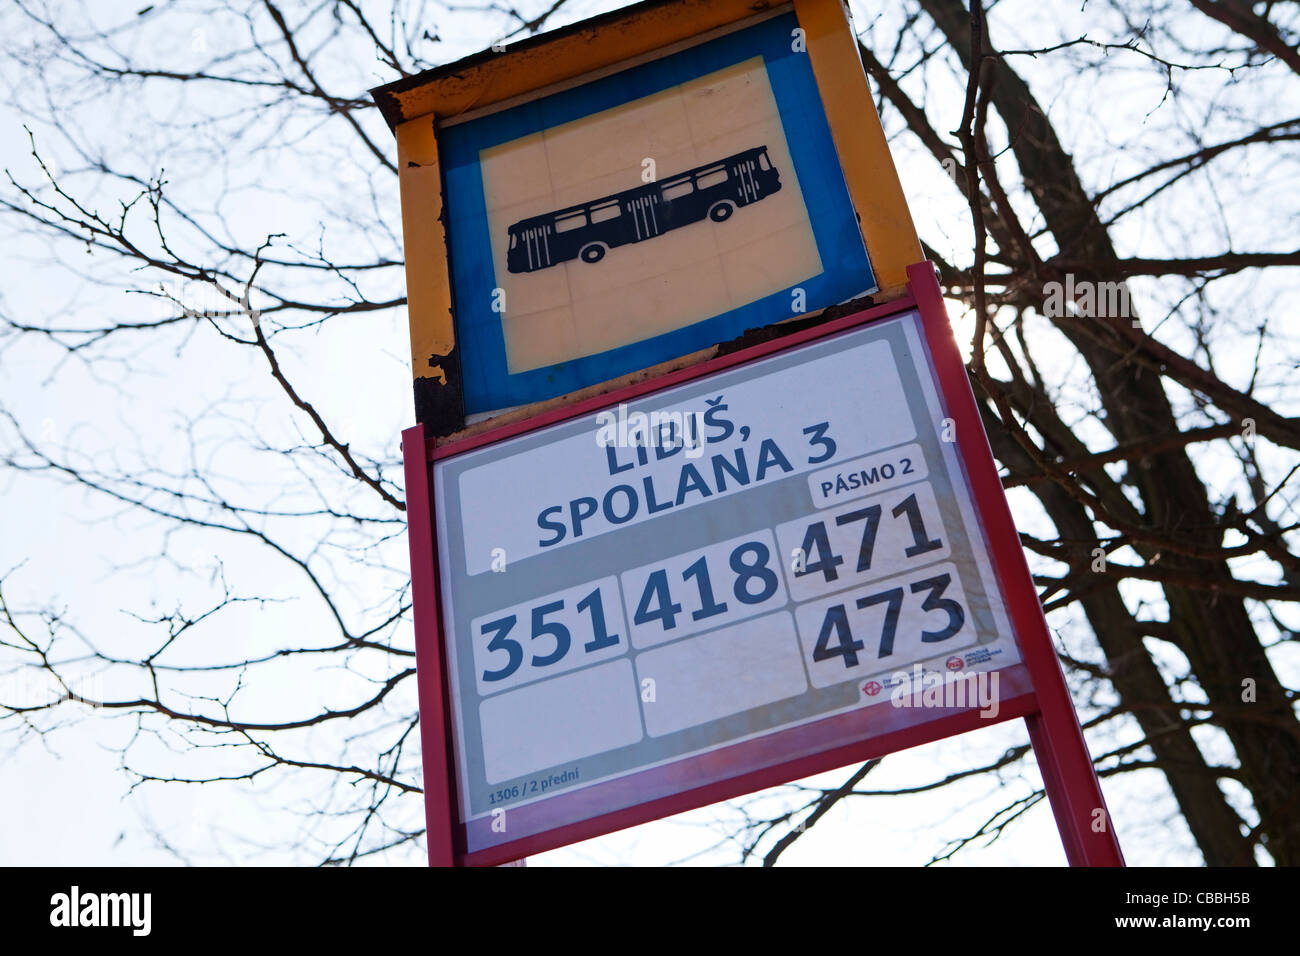 Spolana A.s. - Büro, Verwaltungsgebäude. Spolana A.s. gehört zu den wichtigsten tschechischen Chemieunternehmen. Die Stockfoto